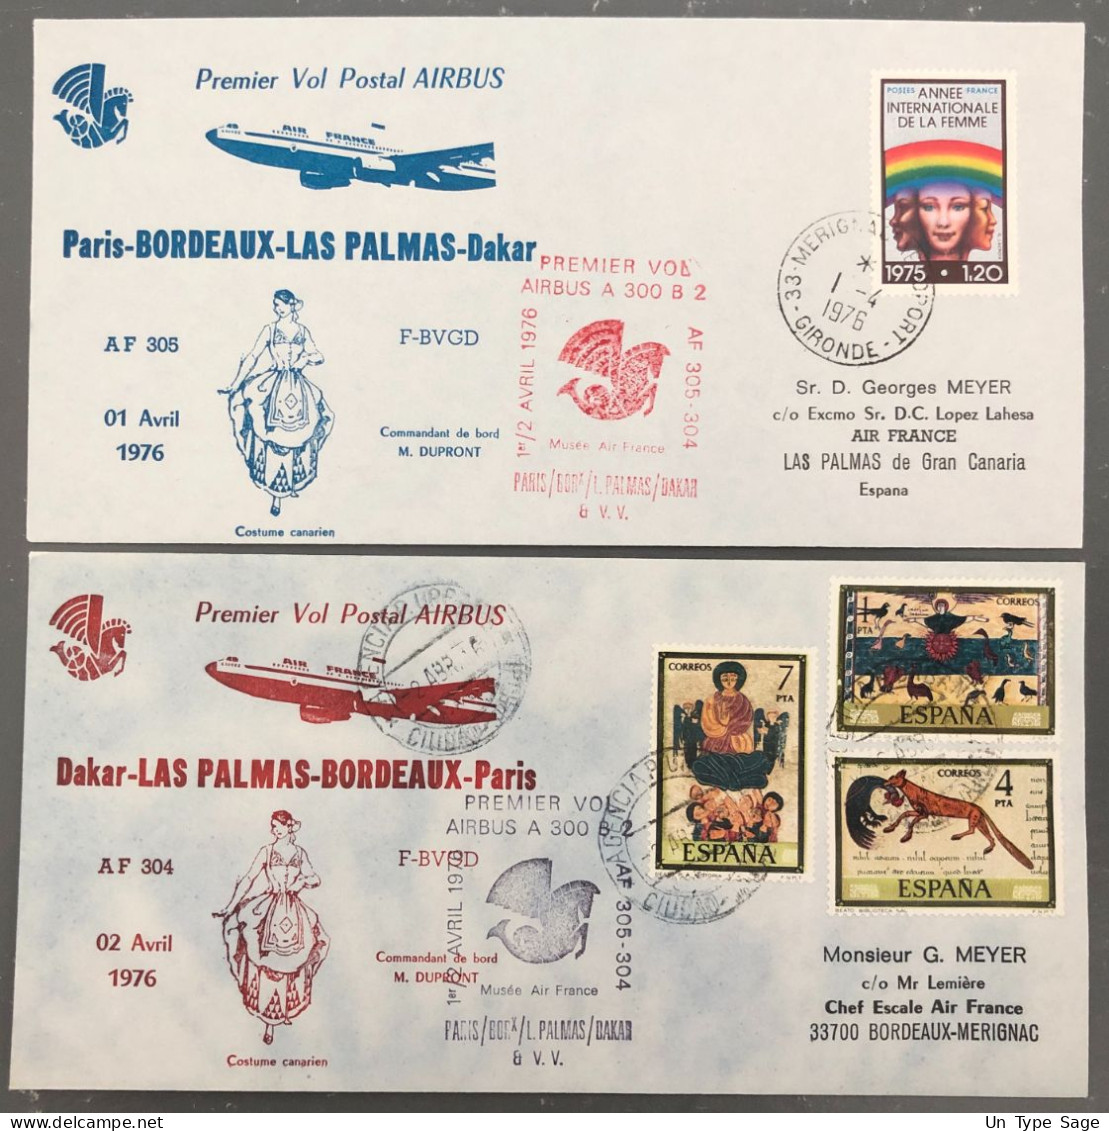 France, Premier Vol (Air France) Paris, Bordeaux, Las Palmas, Dakar 2.4.1976 - 2 Enveloppes - (B1510) - Primeros Vuelos